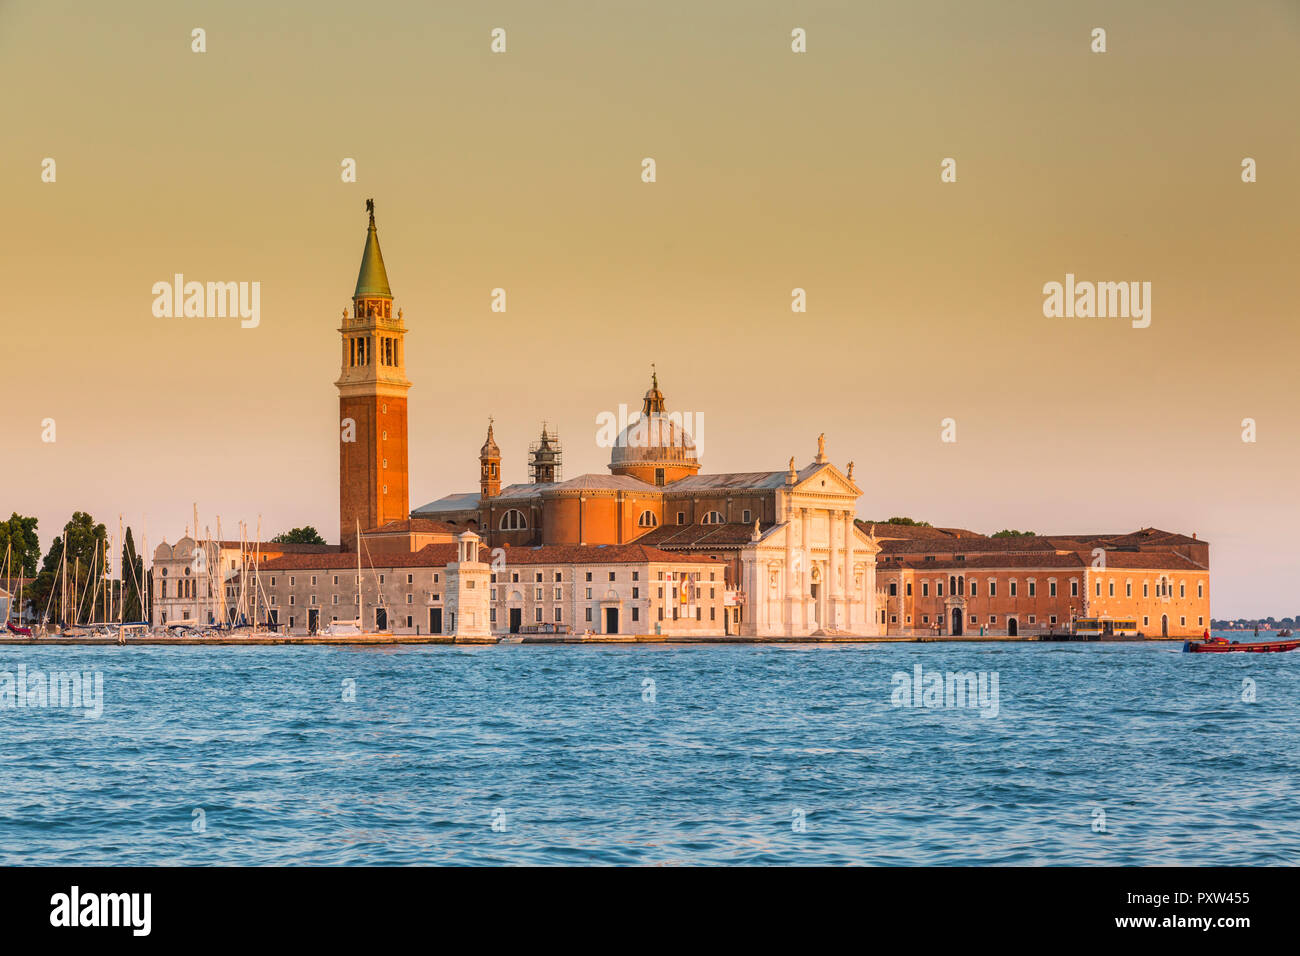 Italy, Venice, San Giorgio Maggiore in the evening light Stock Photo